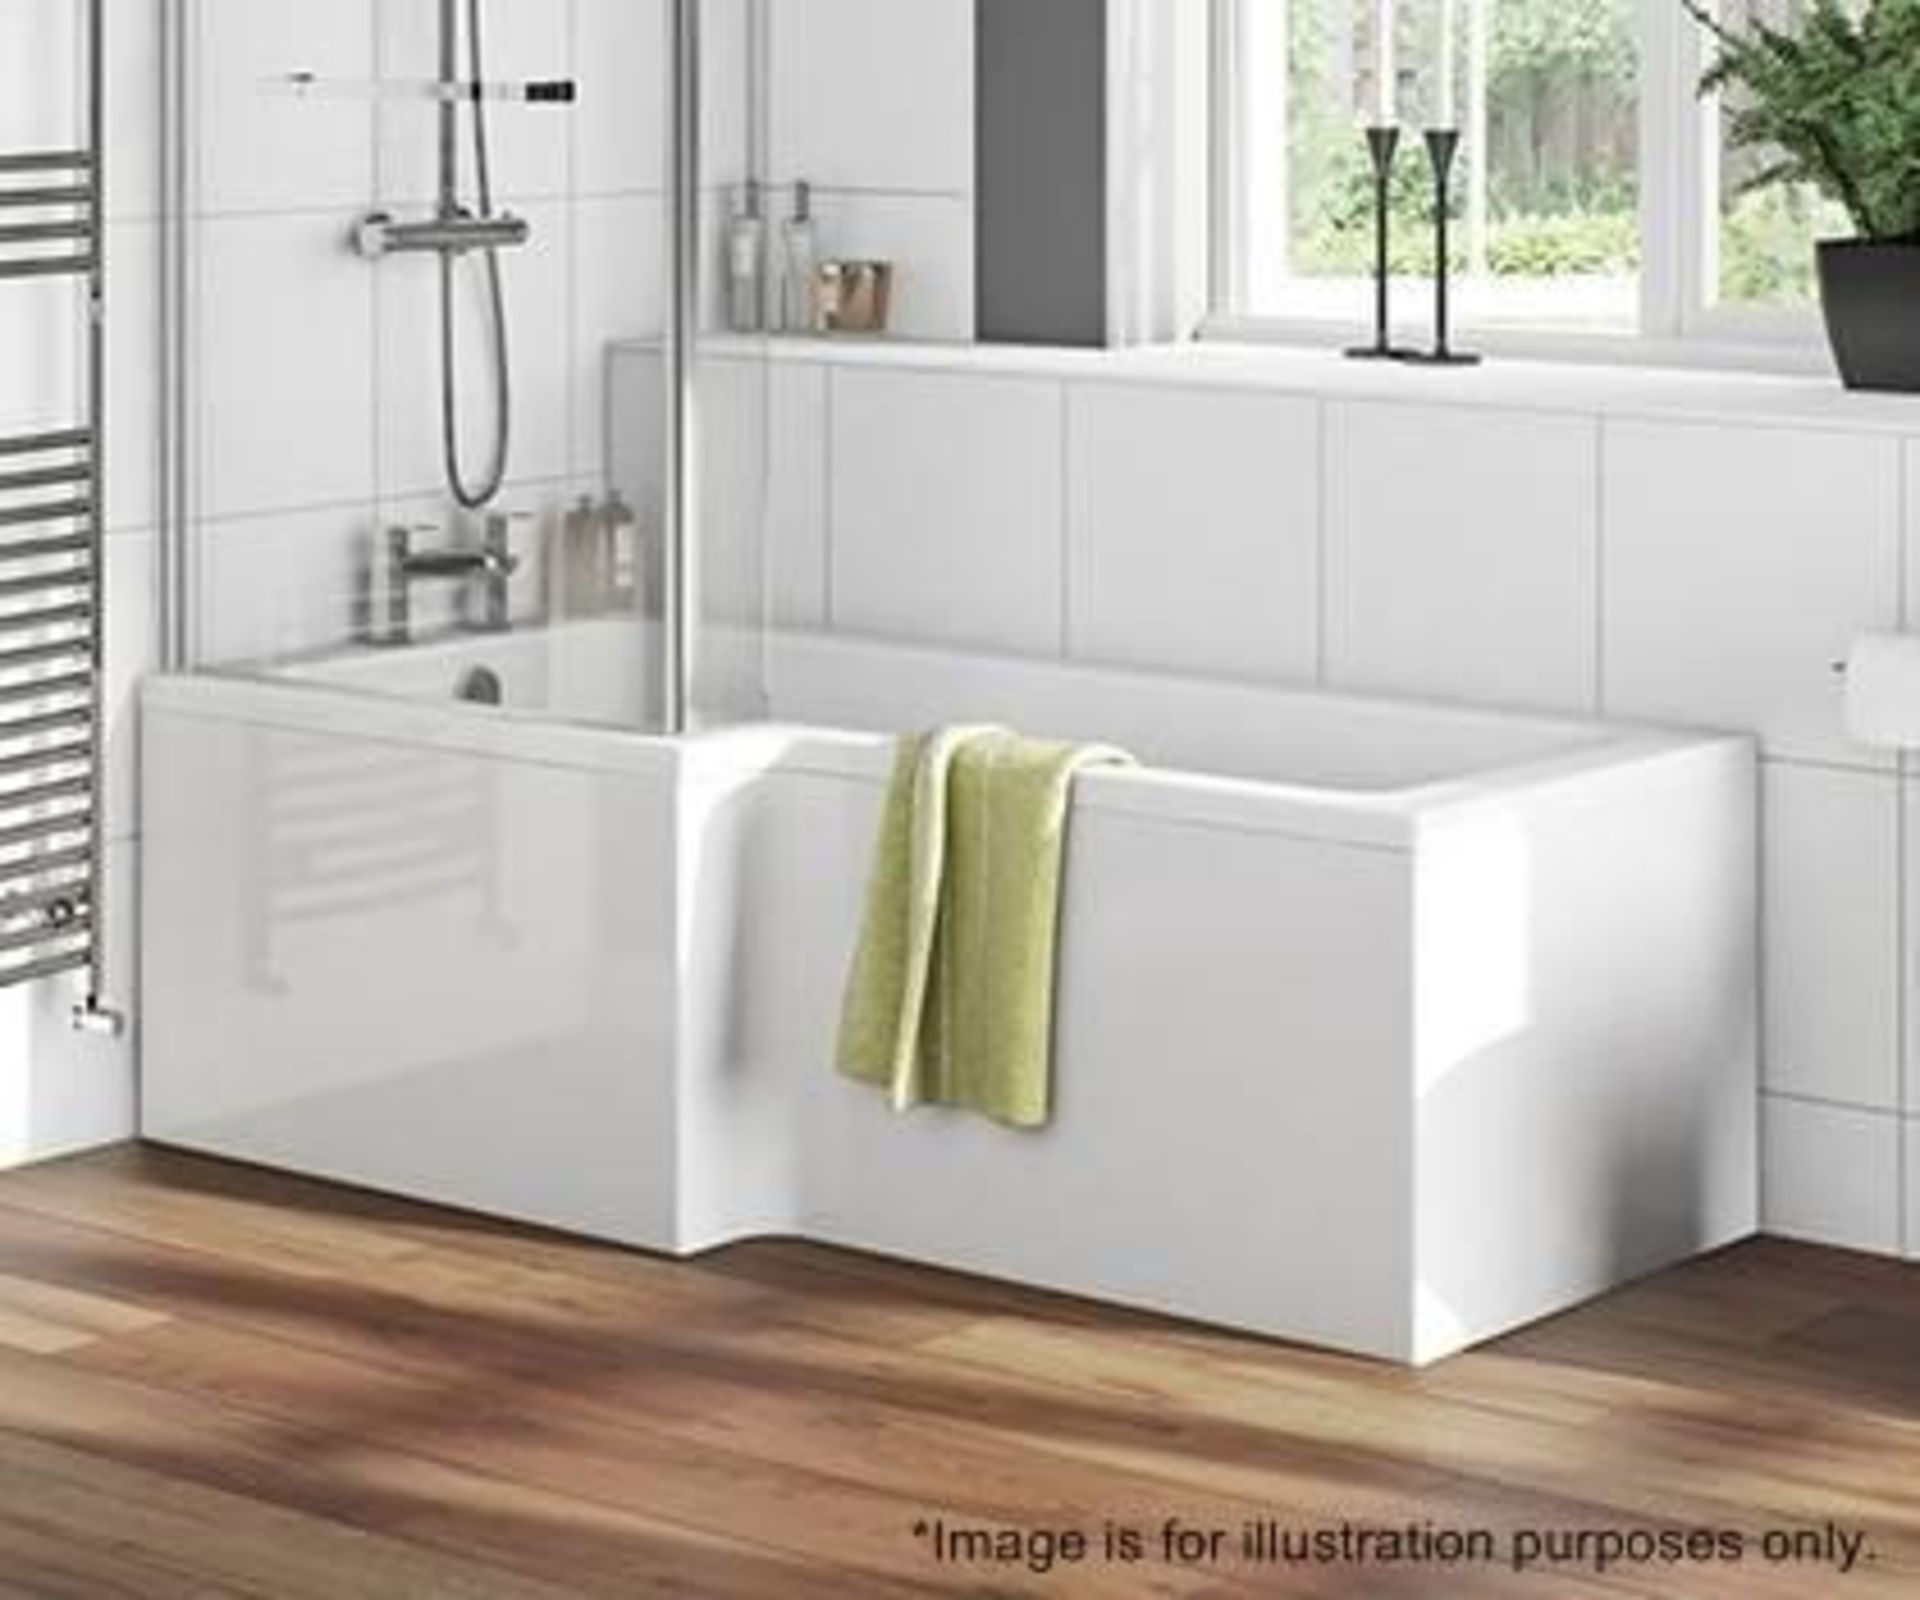 1 x BOSTON L-Shaped Left Handed Shower Bath - No Tap Hole - Pln Encap - Colour: White - Dimensons: 1